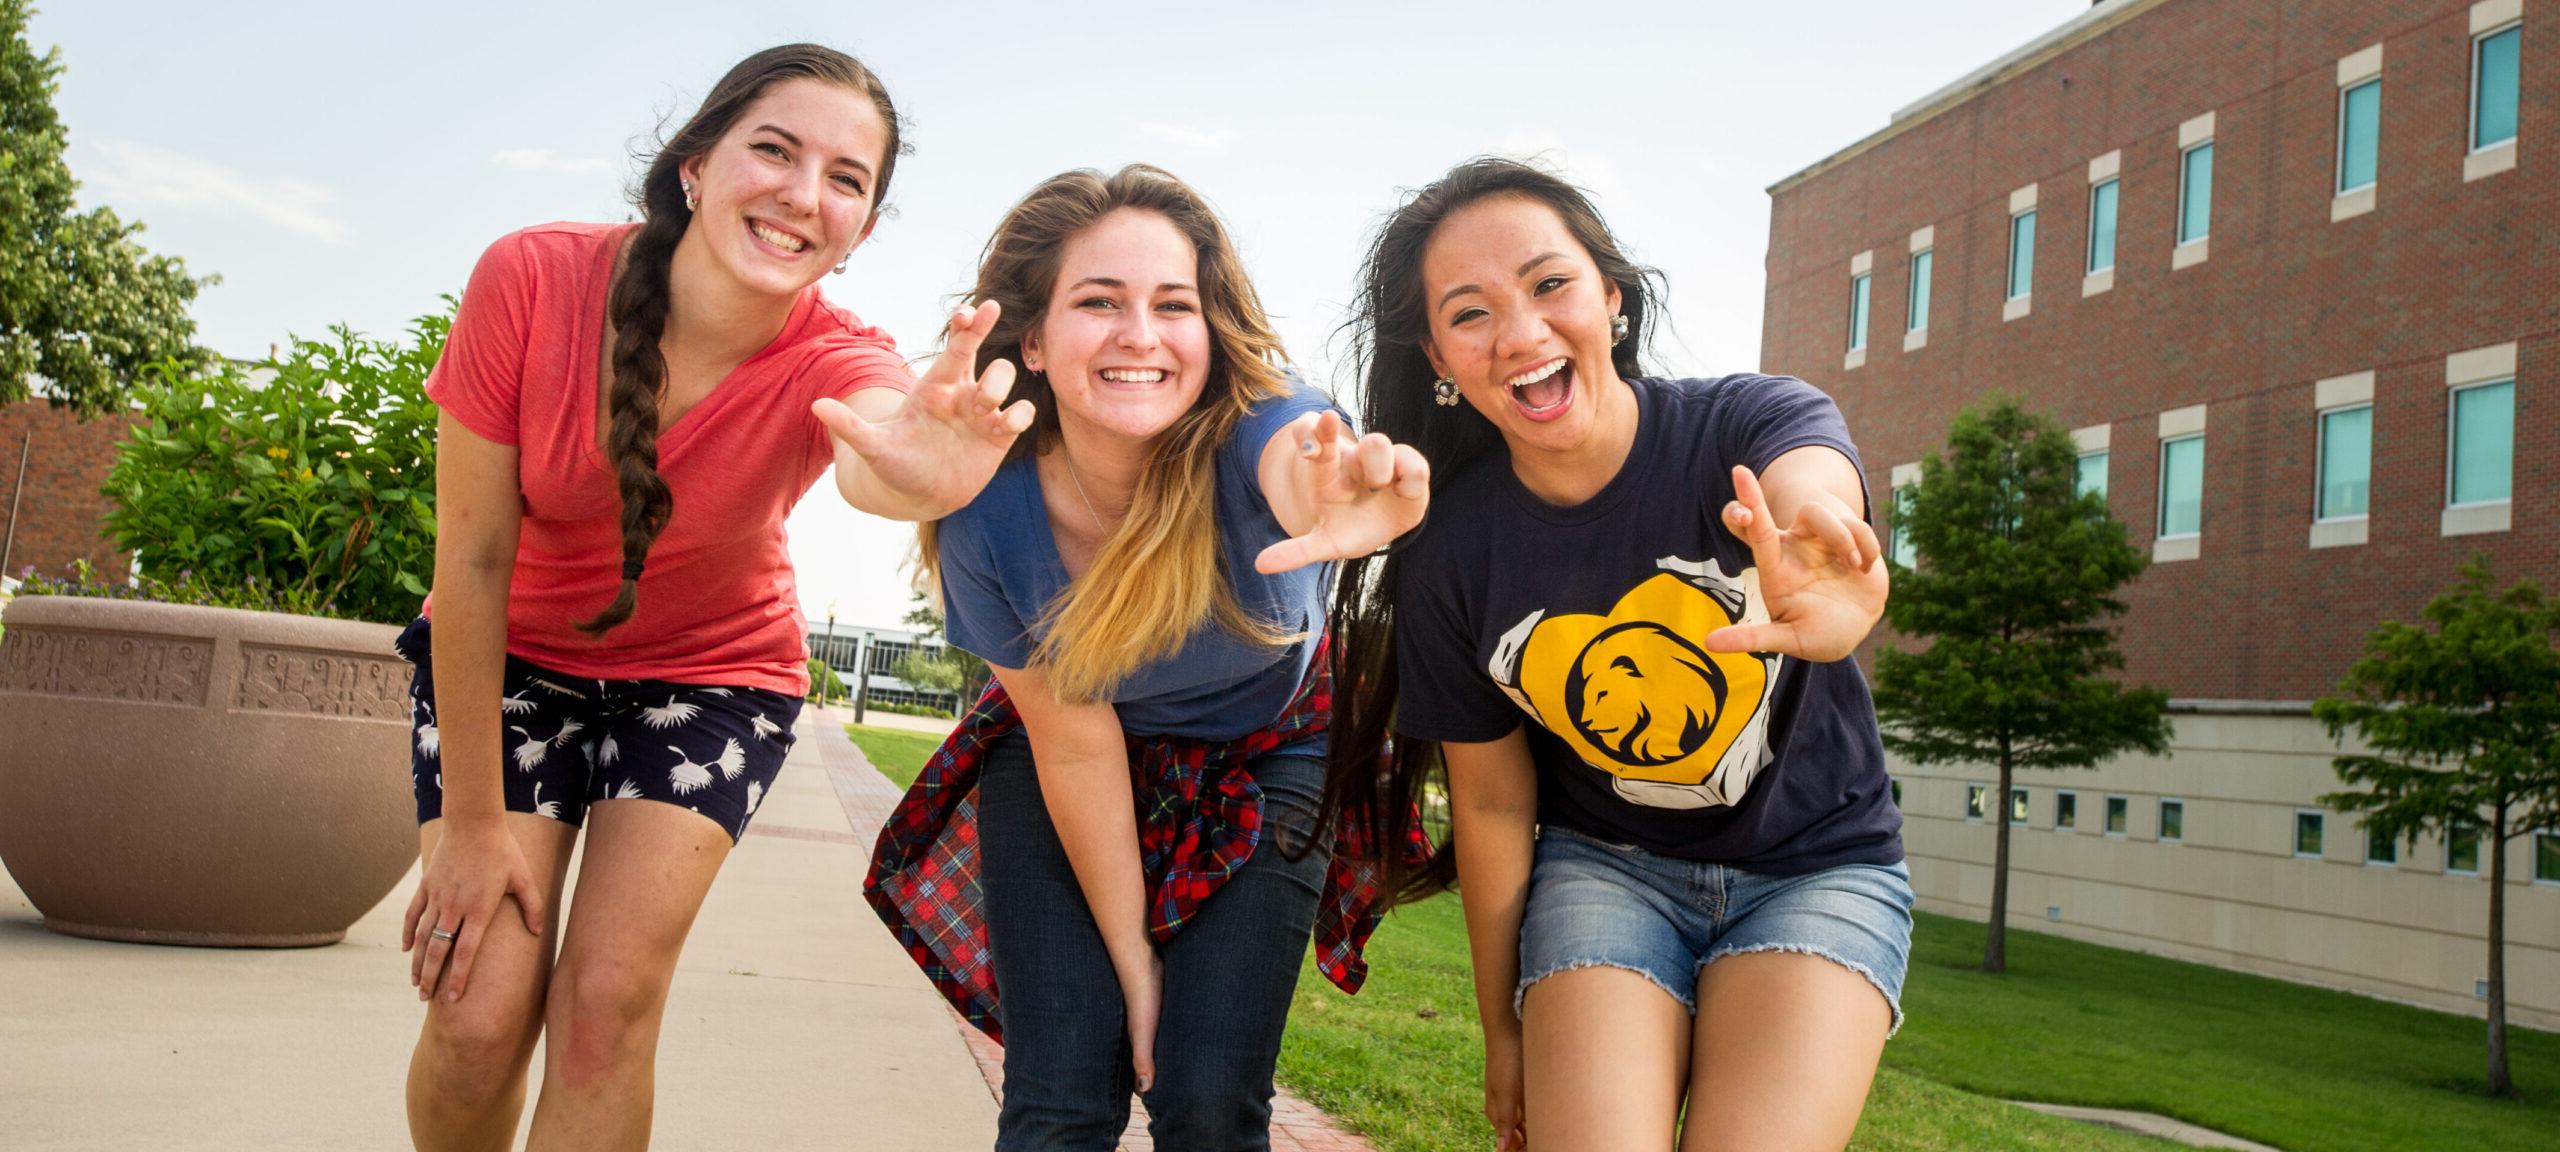 三名女学生微笑着展示狮子座的手势.